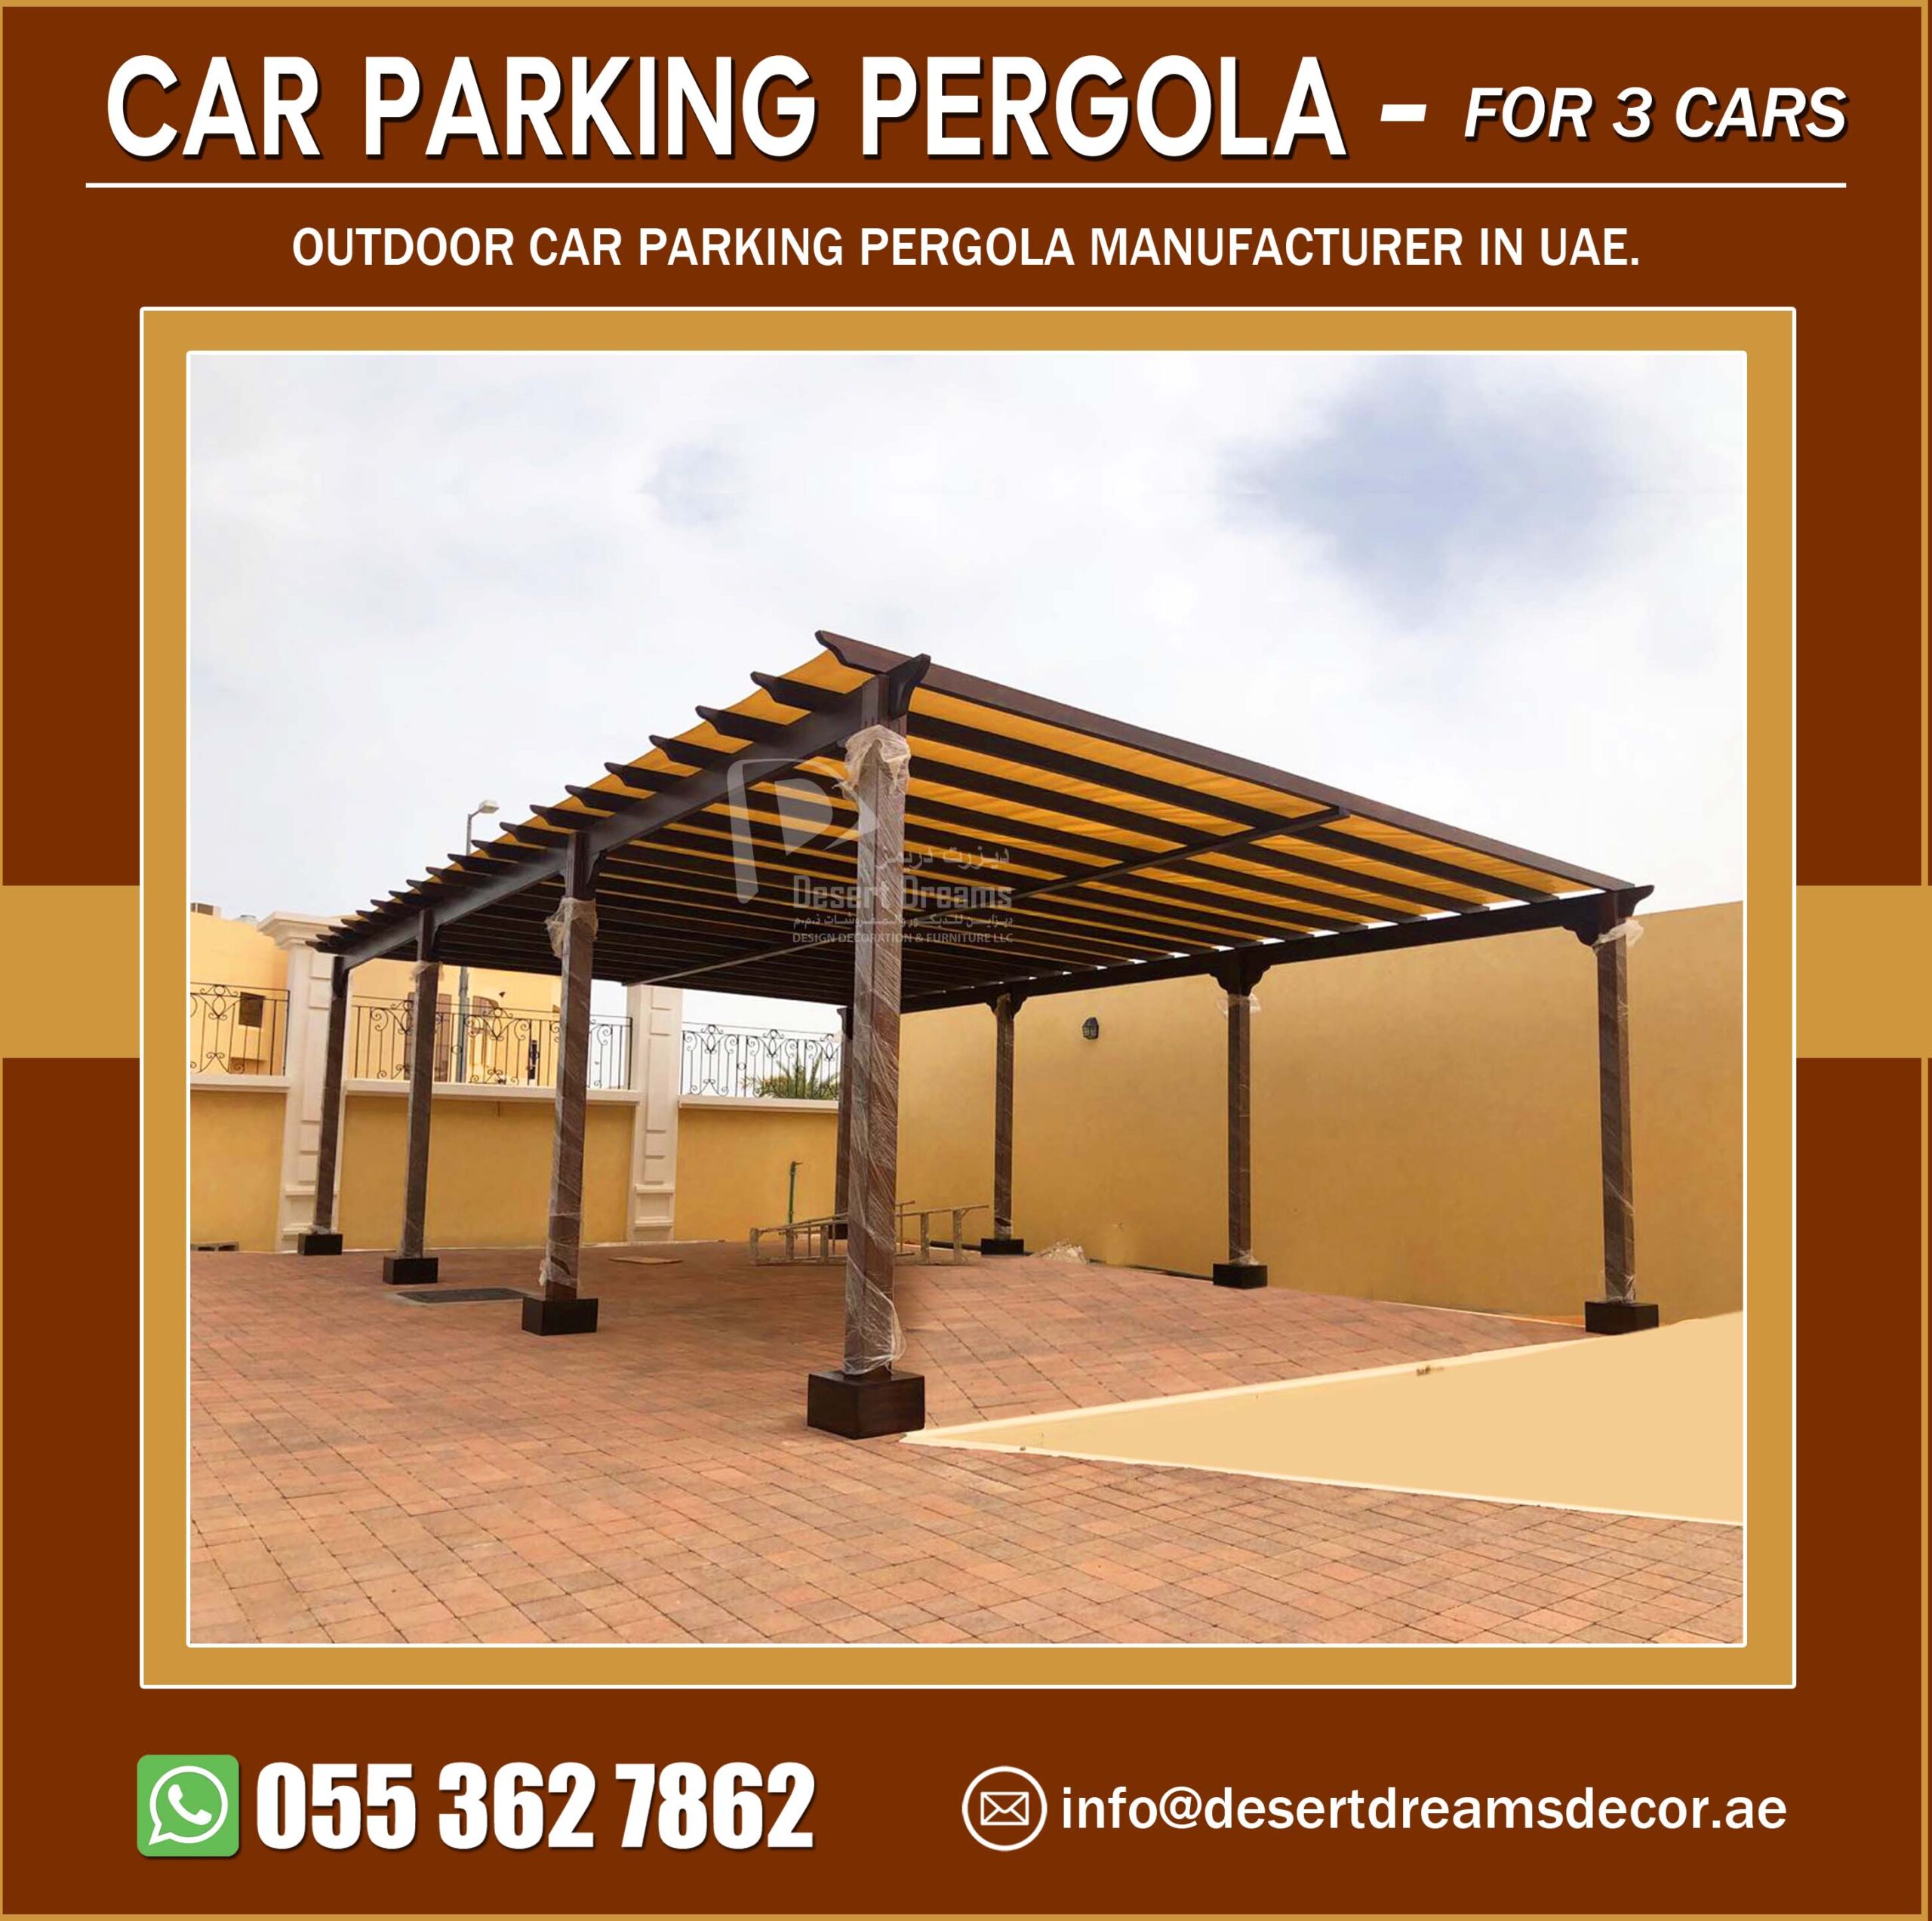 Three Cars Parking Pergola Manufacturer in UAE.jpg